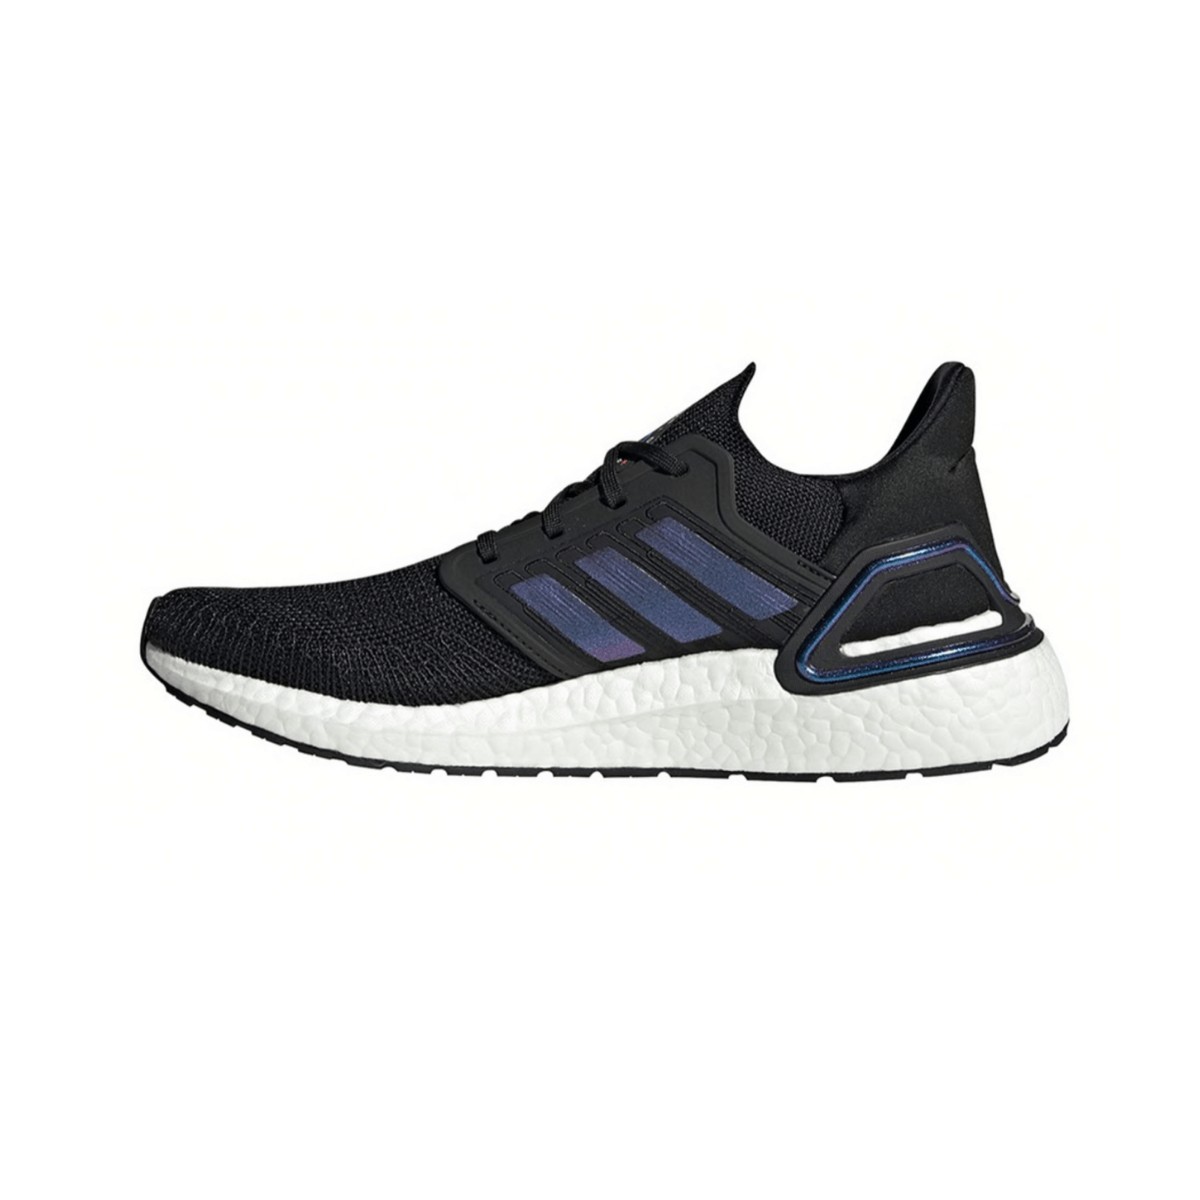 Vinagre En cualquier momento Instalaciones Adidas Ultra Boost 20 Men's Running Shoes Black Blue Violet Metallic